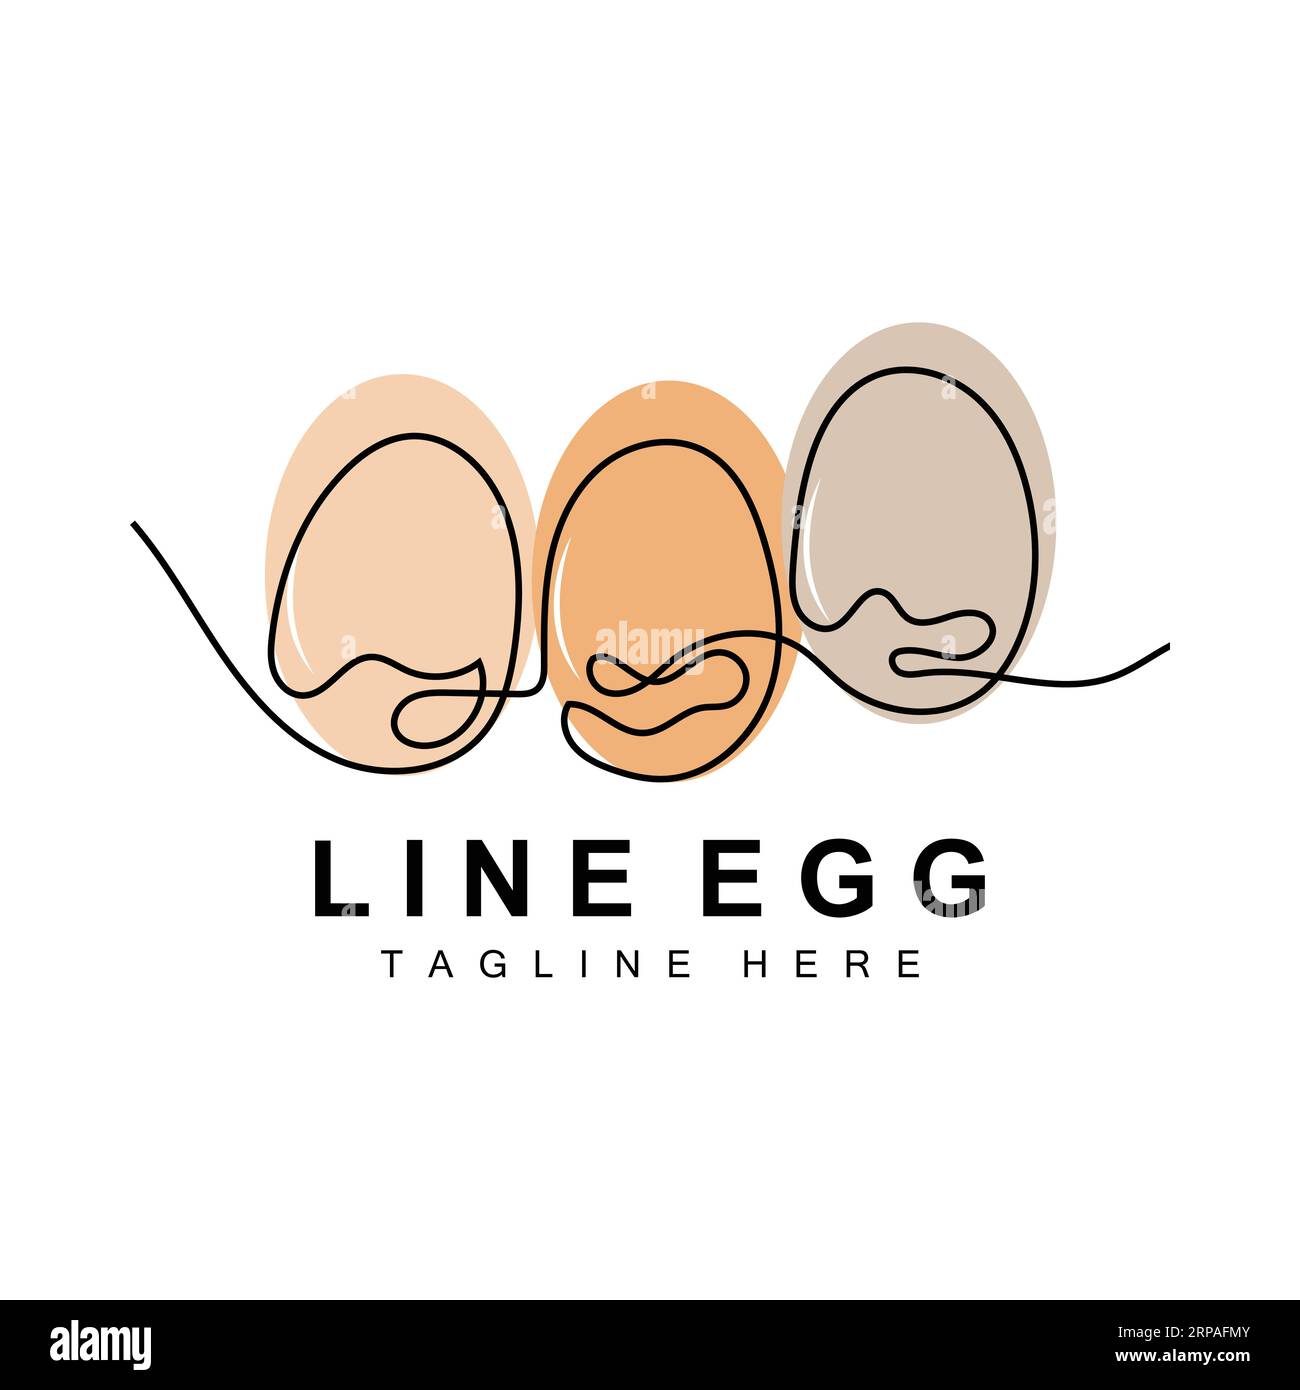 Modèle de conception de logo Egg. Vecteur alimentaire naturel des animaux pondeuses. Logo Line Art Design. Illustration de Vecteur